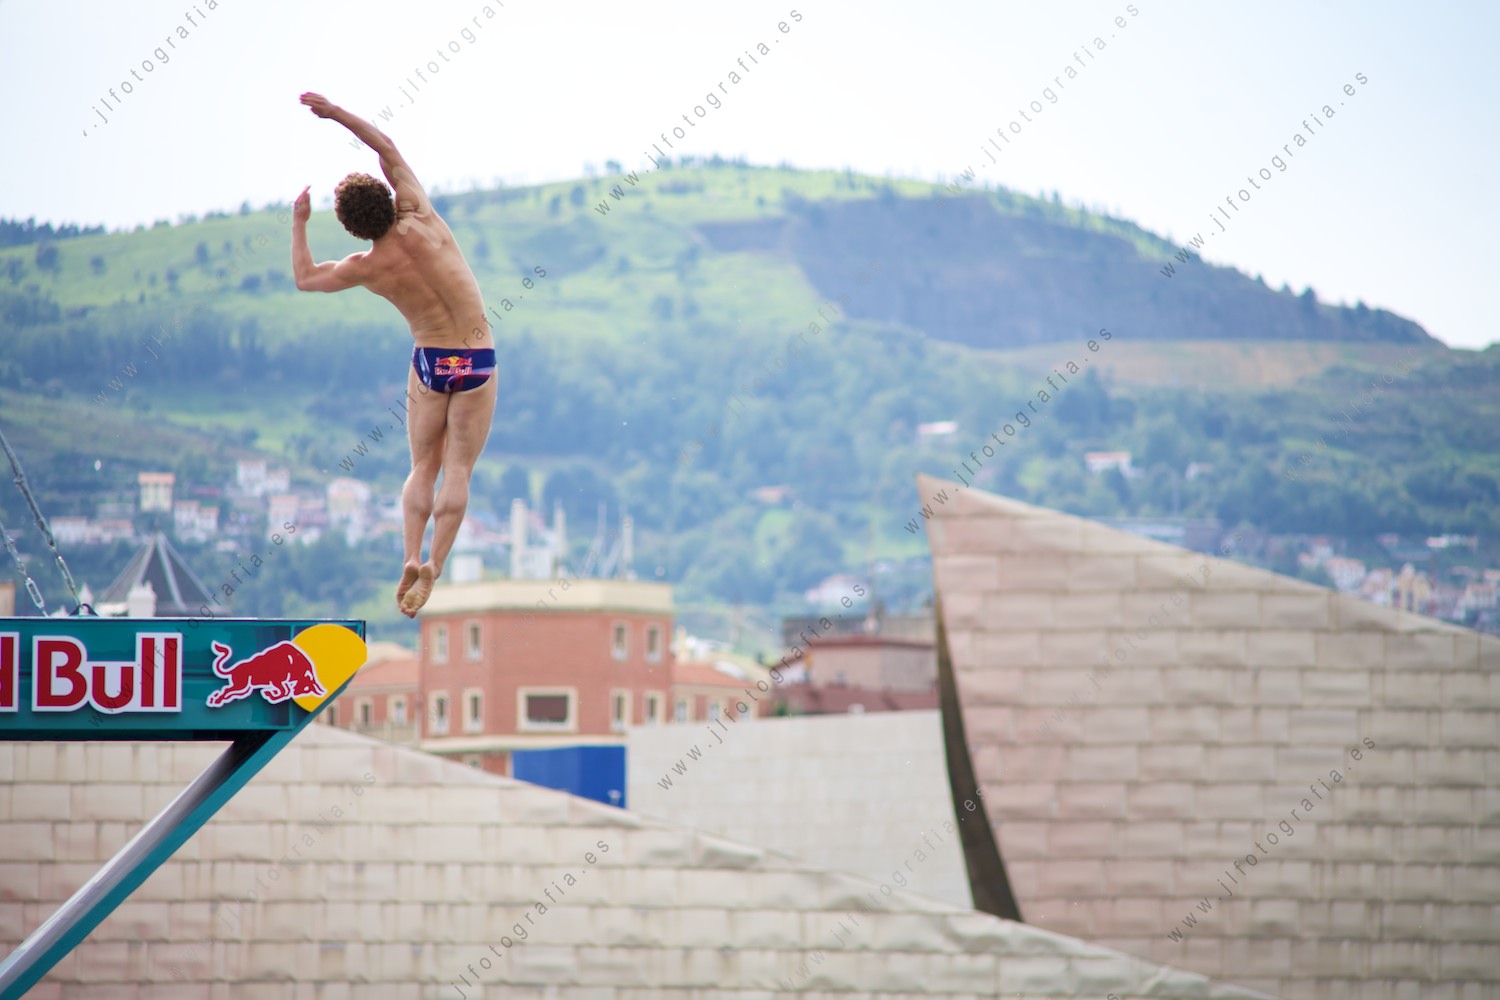 Inicio del salto de un clavadista en el Red Bull Cliff Diving de Bilbao con su skyline de fondo